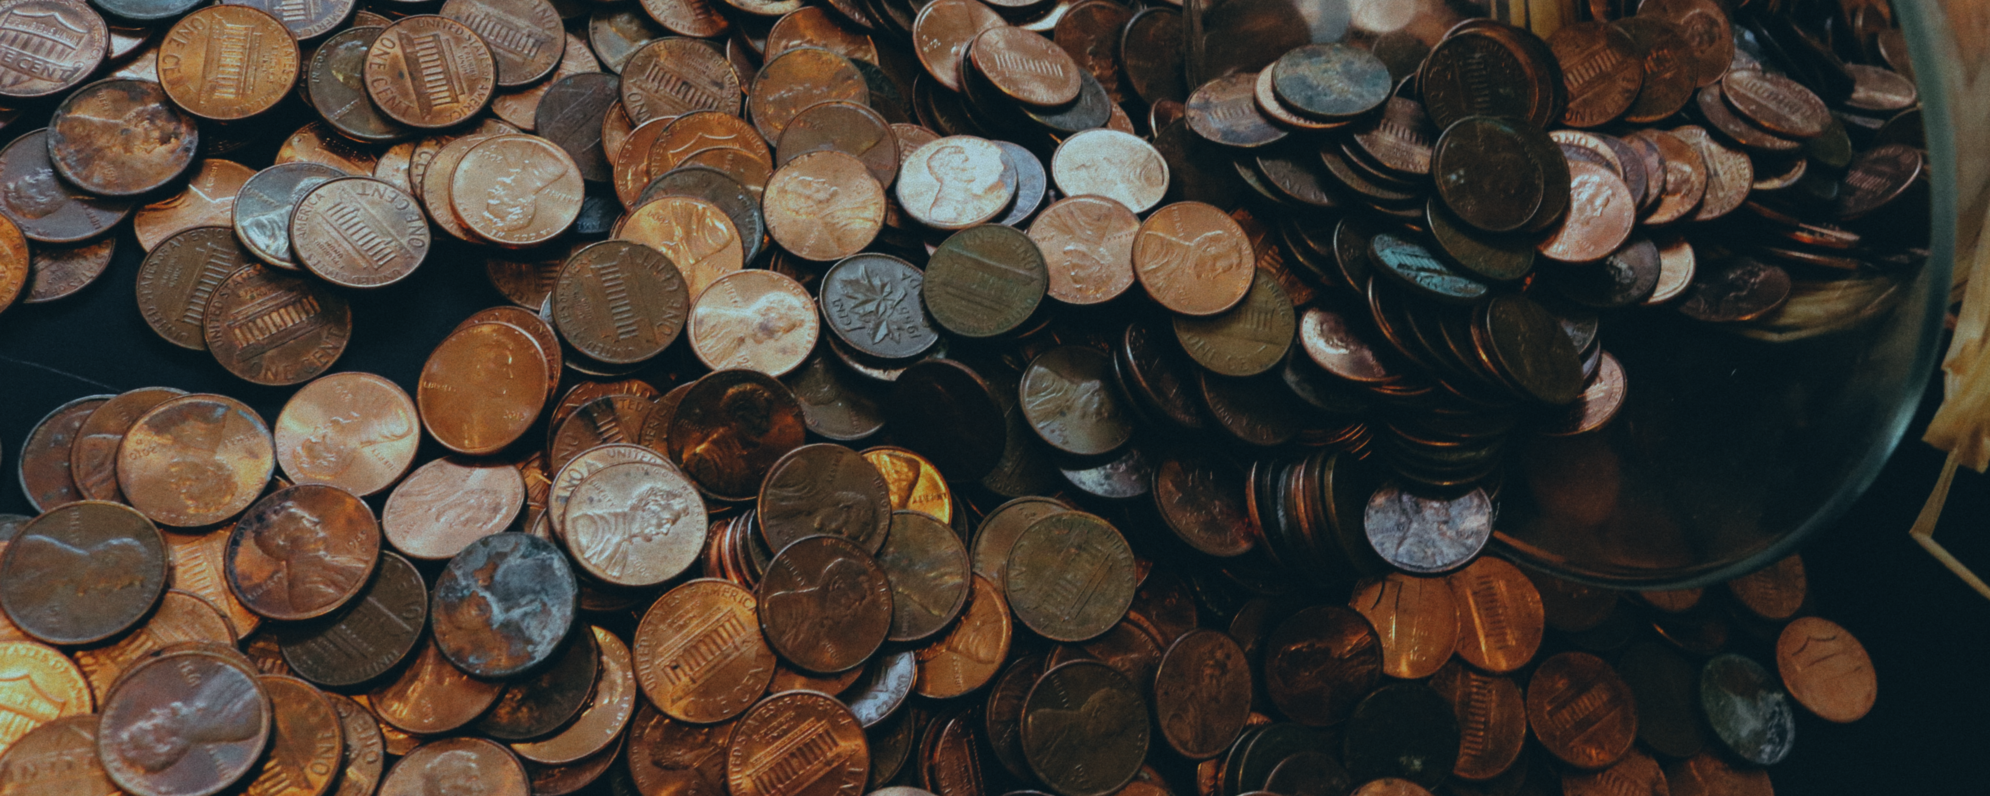 Coins spread across a surface